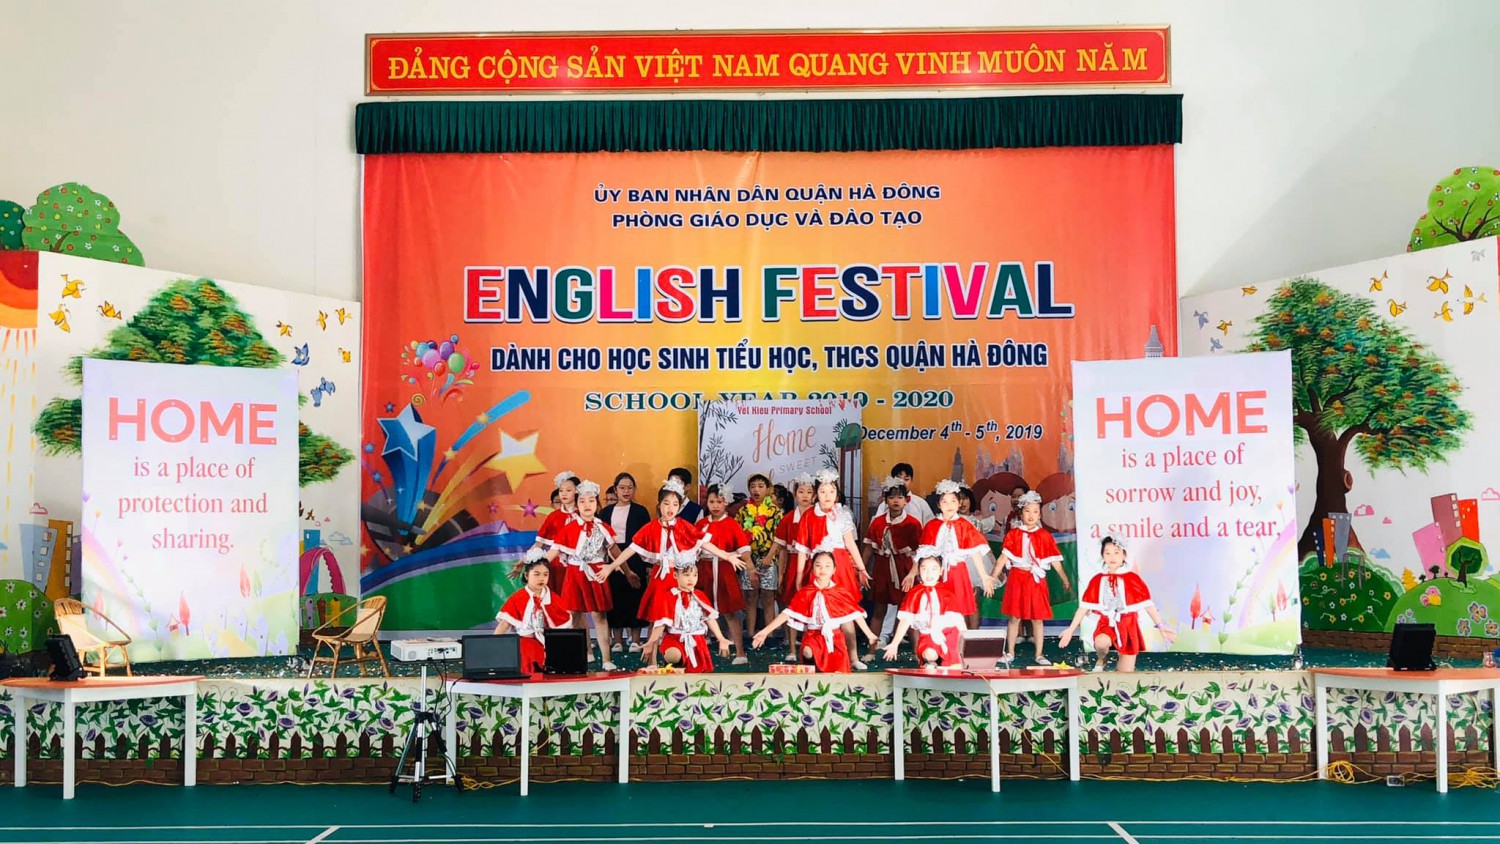 English Festival School year 2019 - 2020